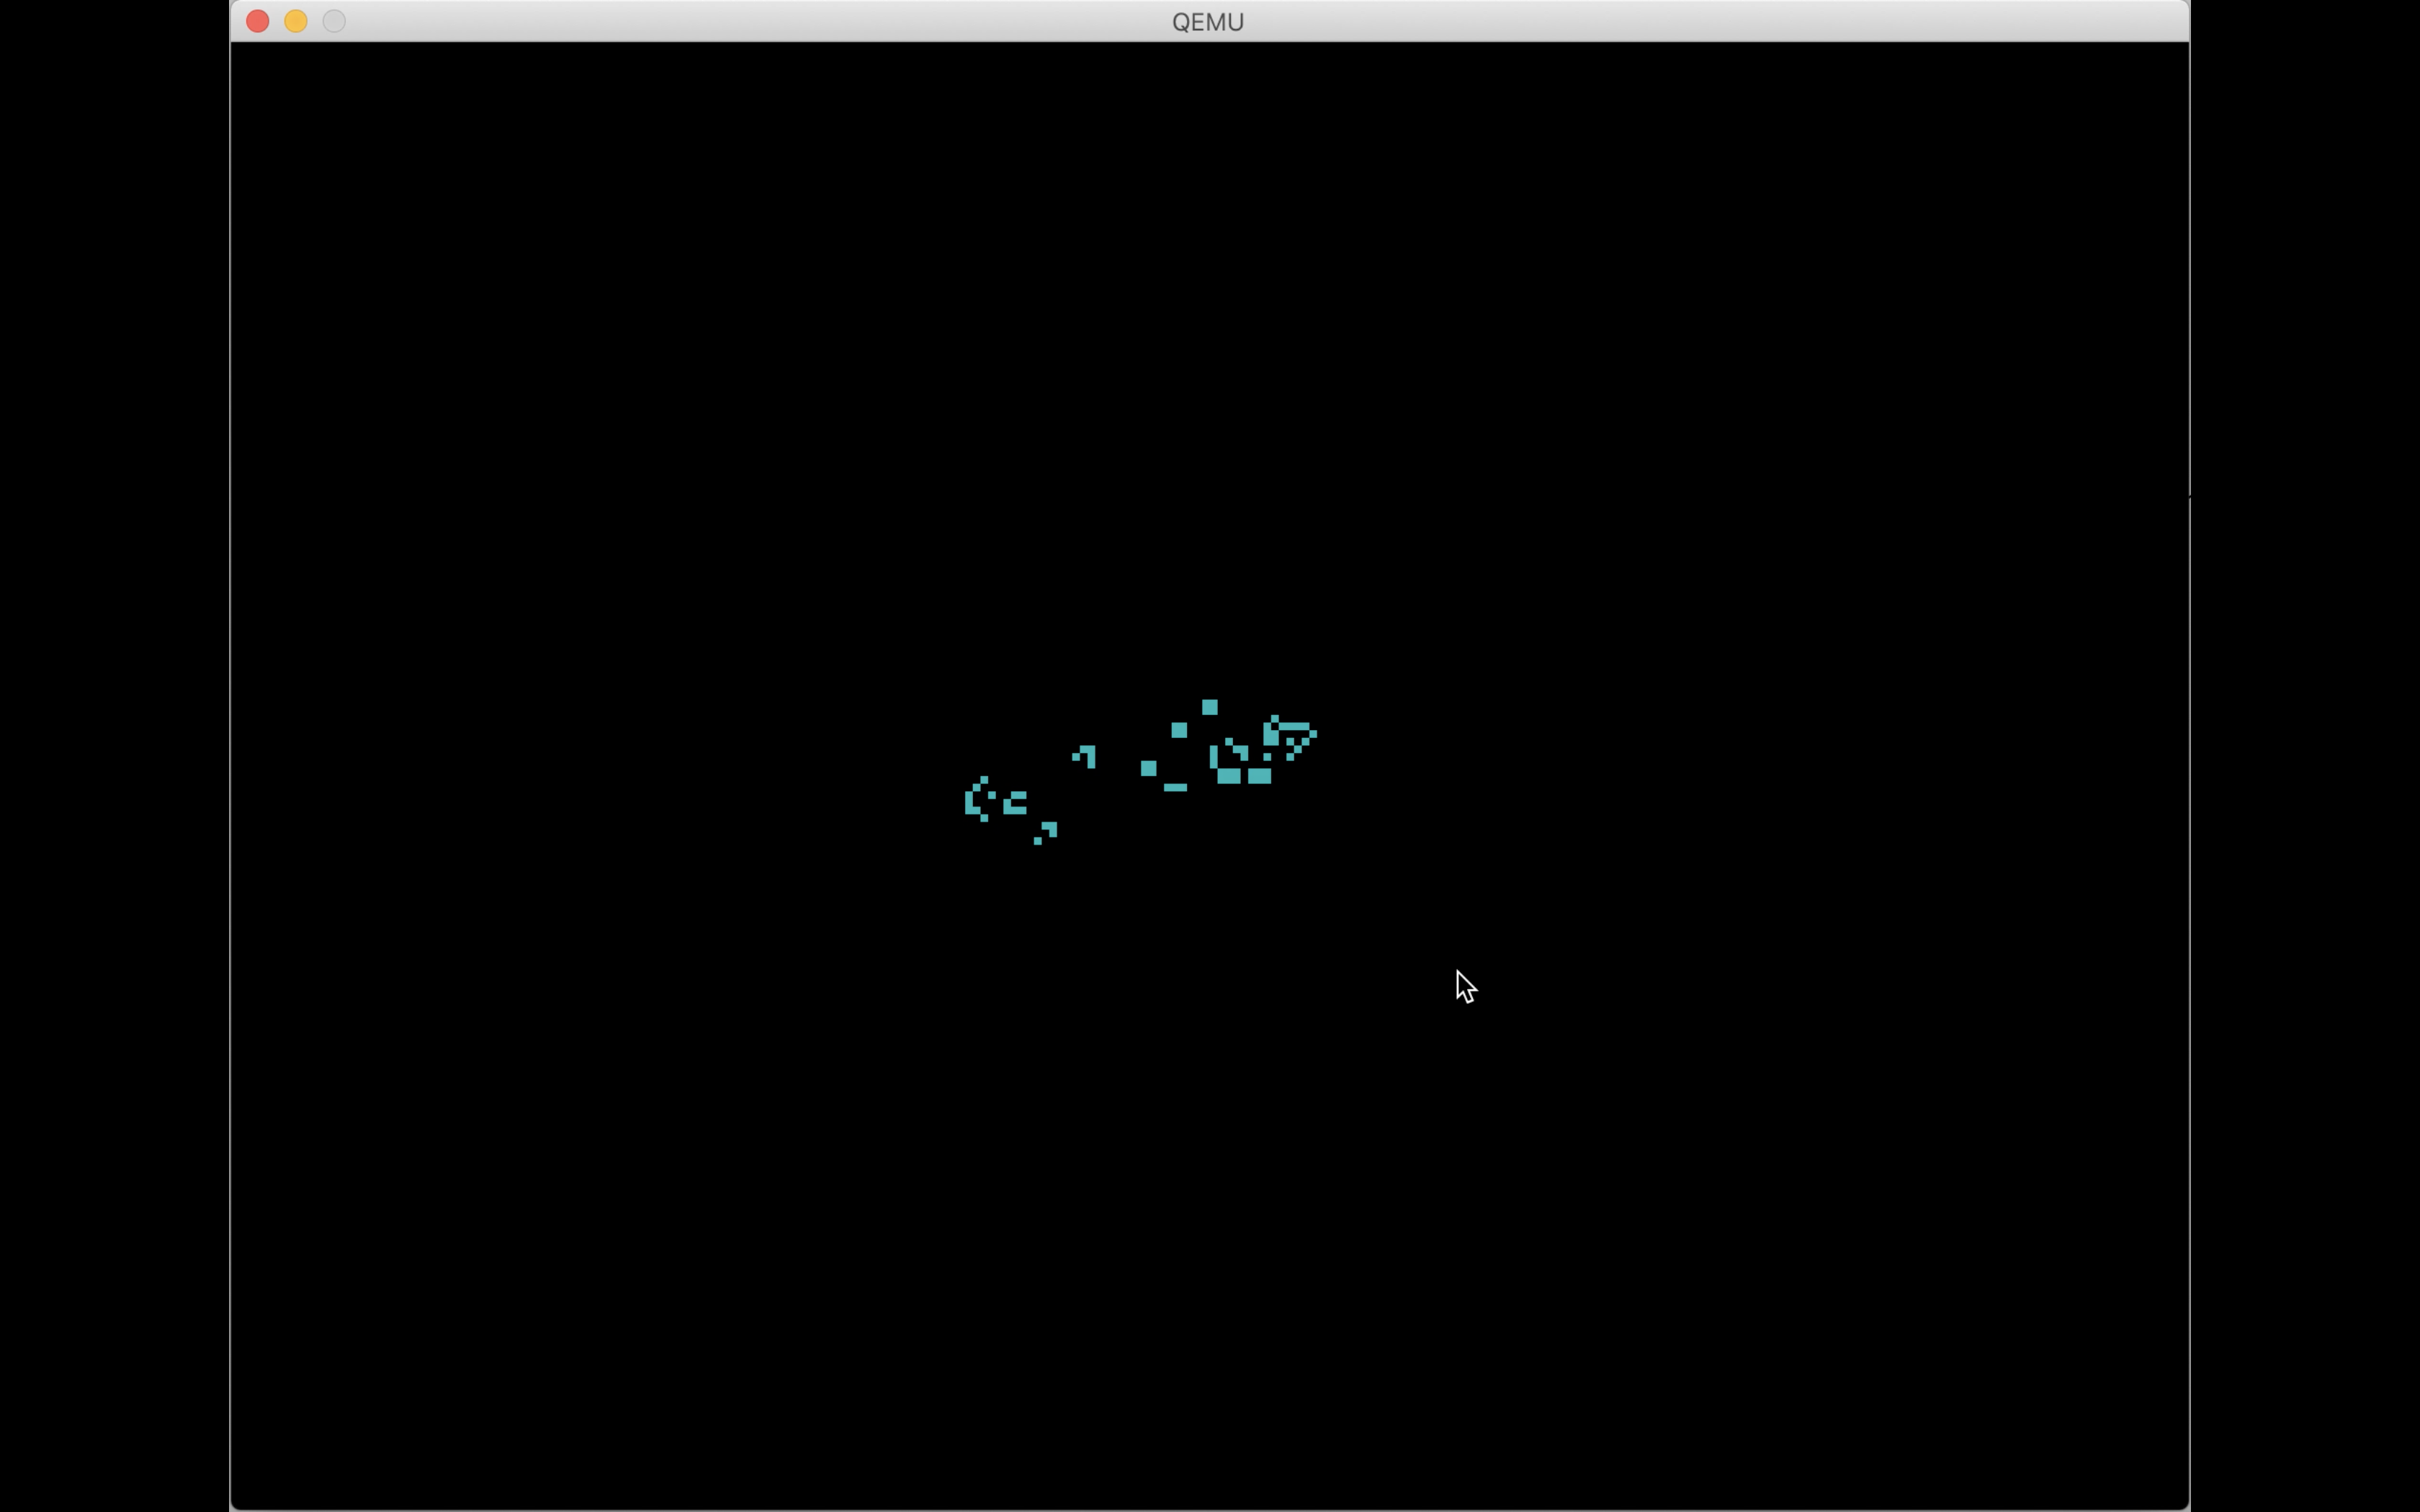 screenshot of Game of Life running on the Mu computer